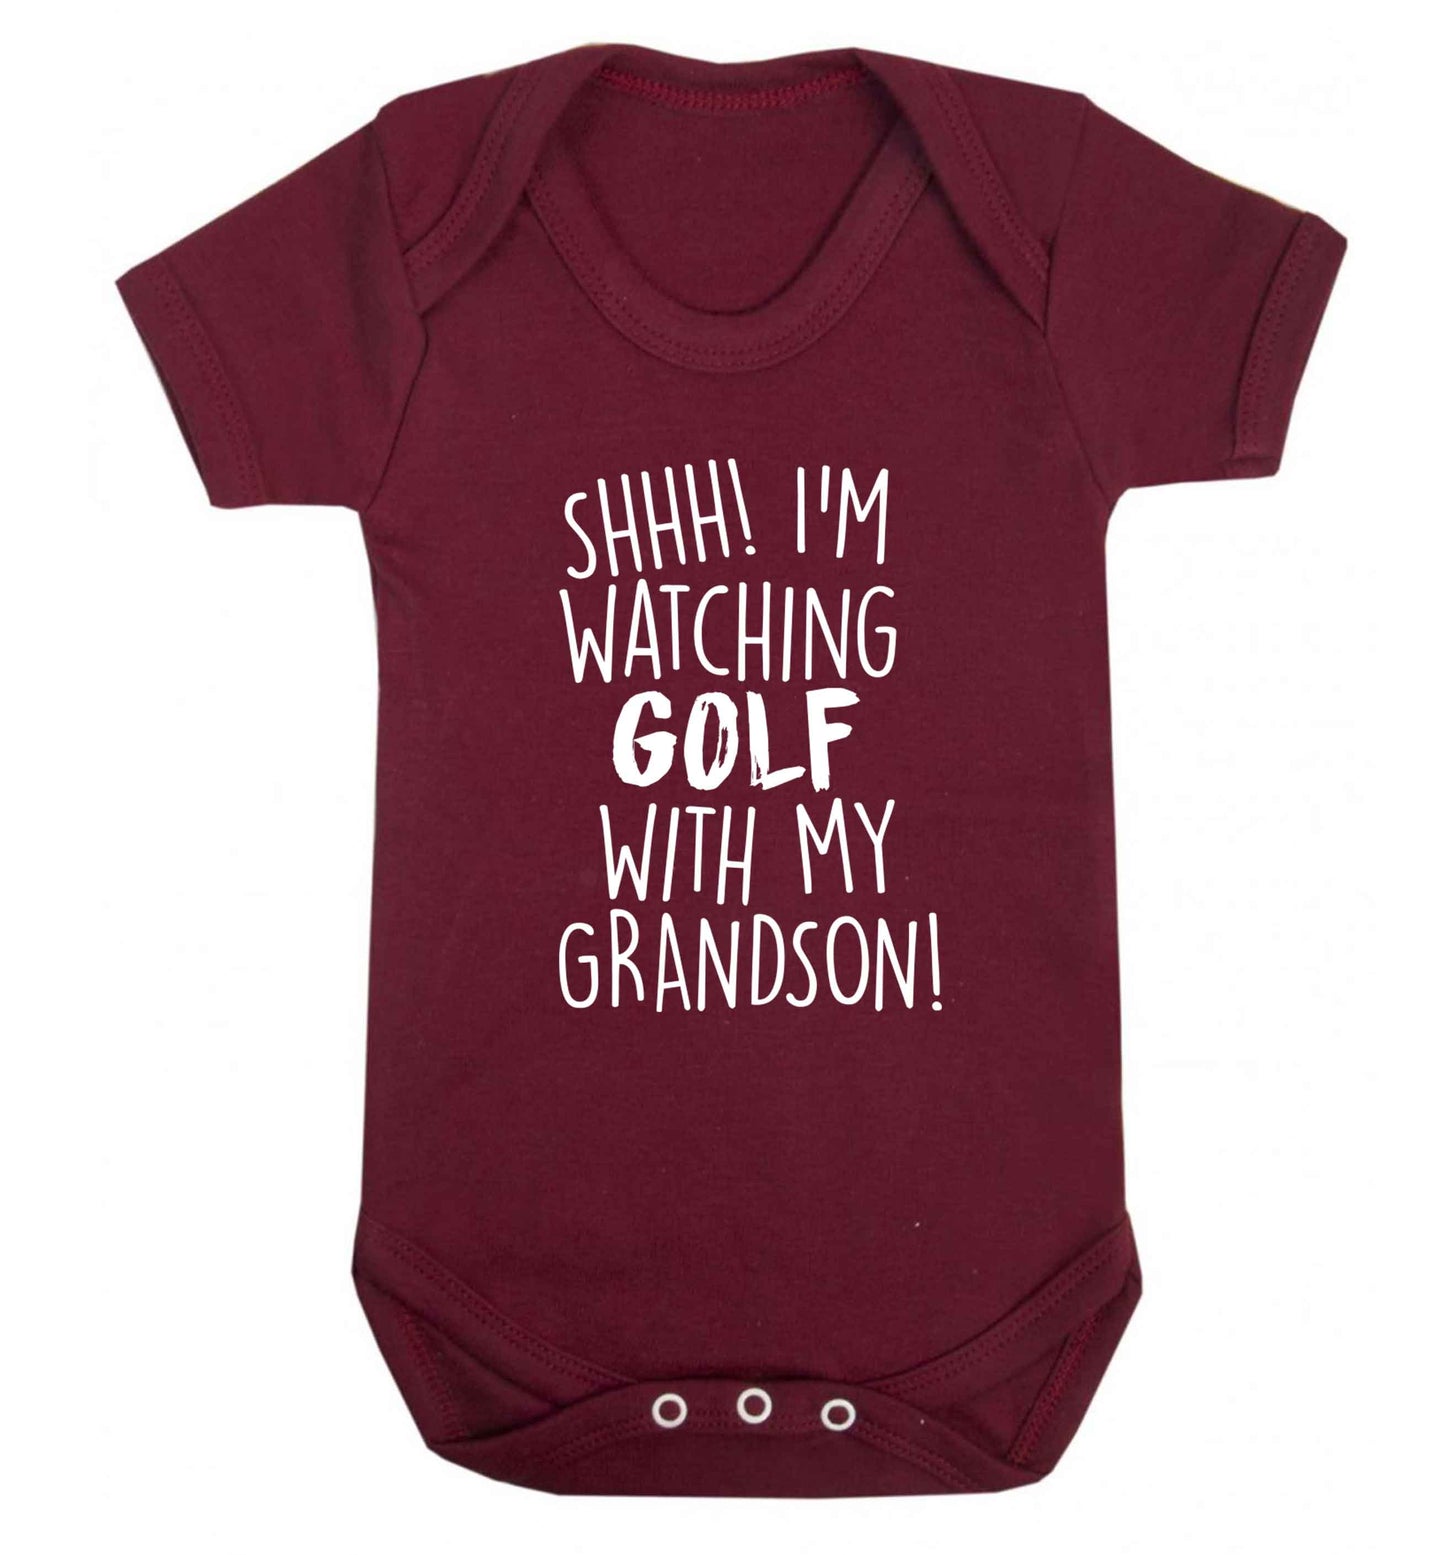 Shh I'm watching golf with my grandsonBaby Vest maroon 18-24 months